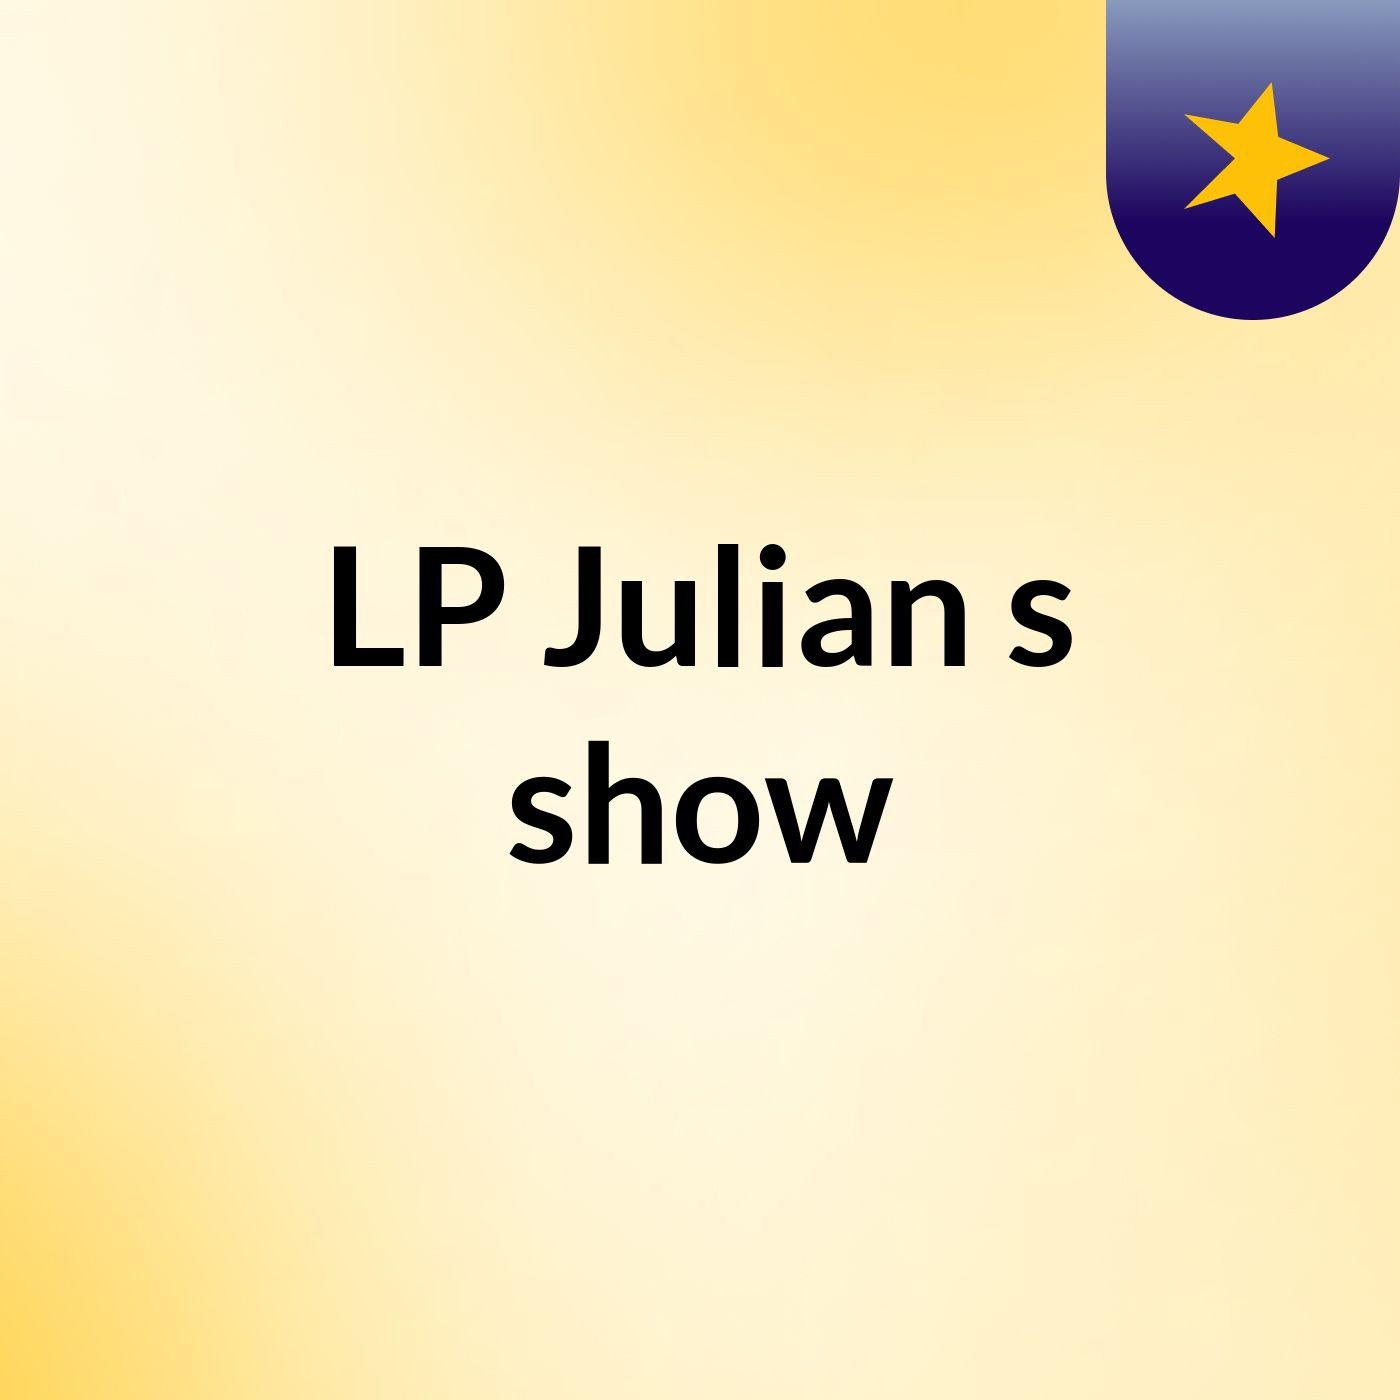 LP Julian's show